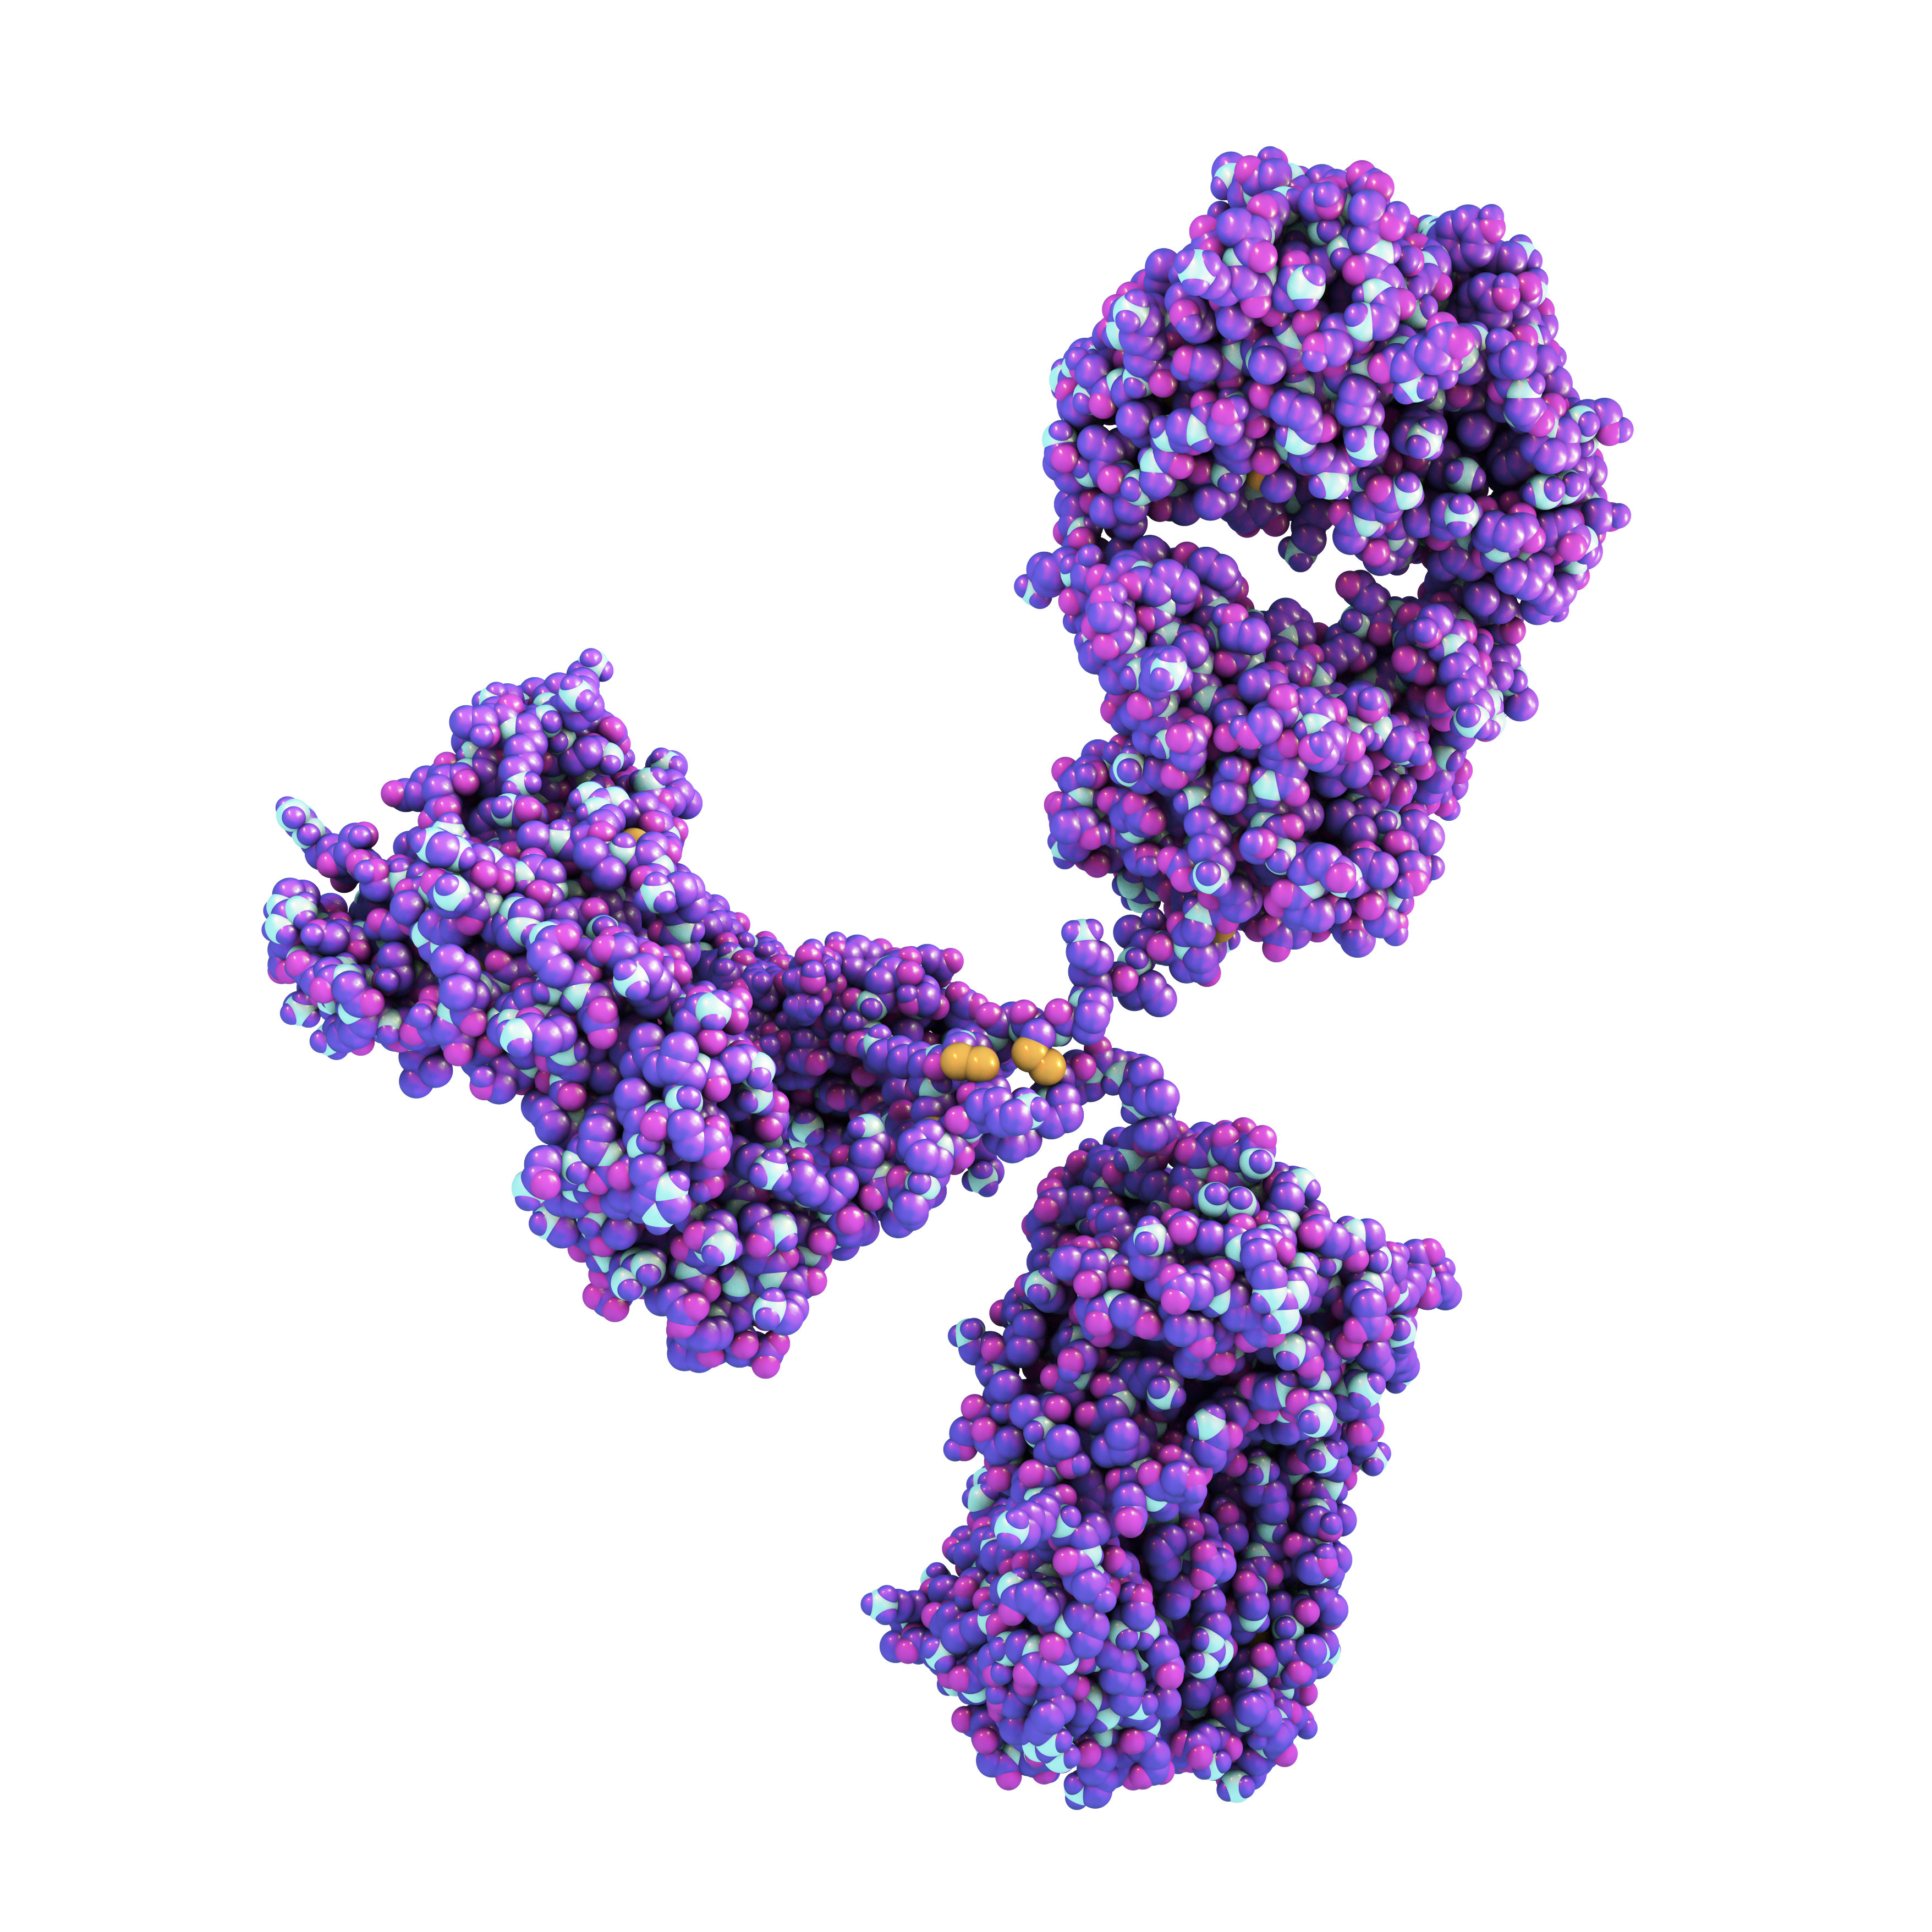 Human SARS-CoV-2 Antibody (DH6)